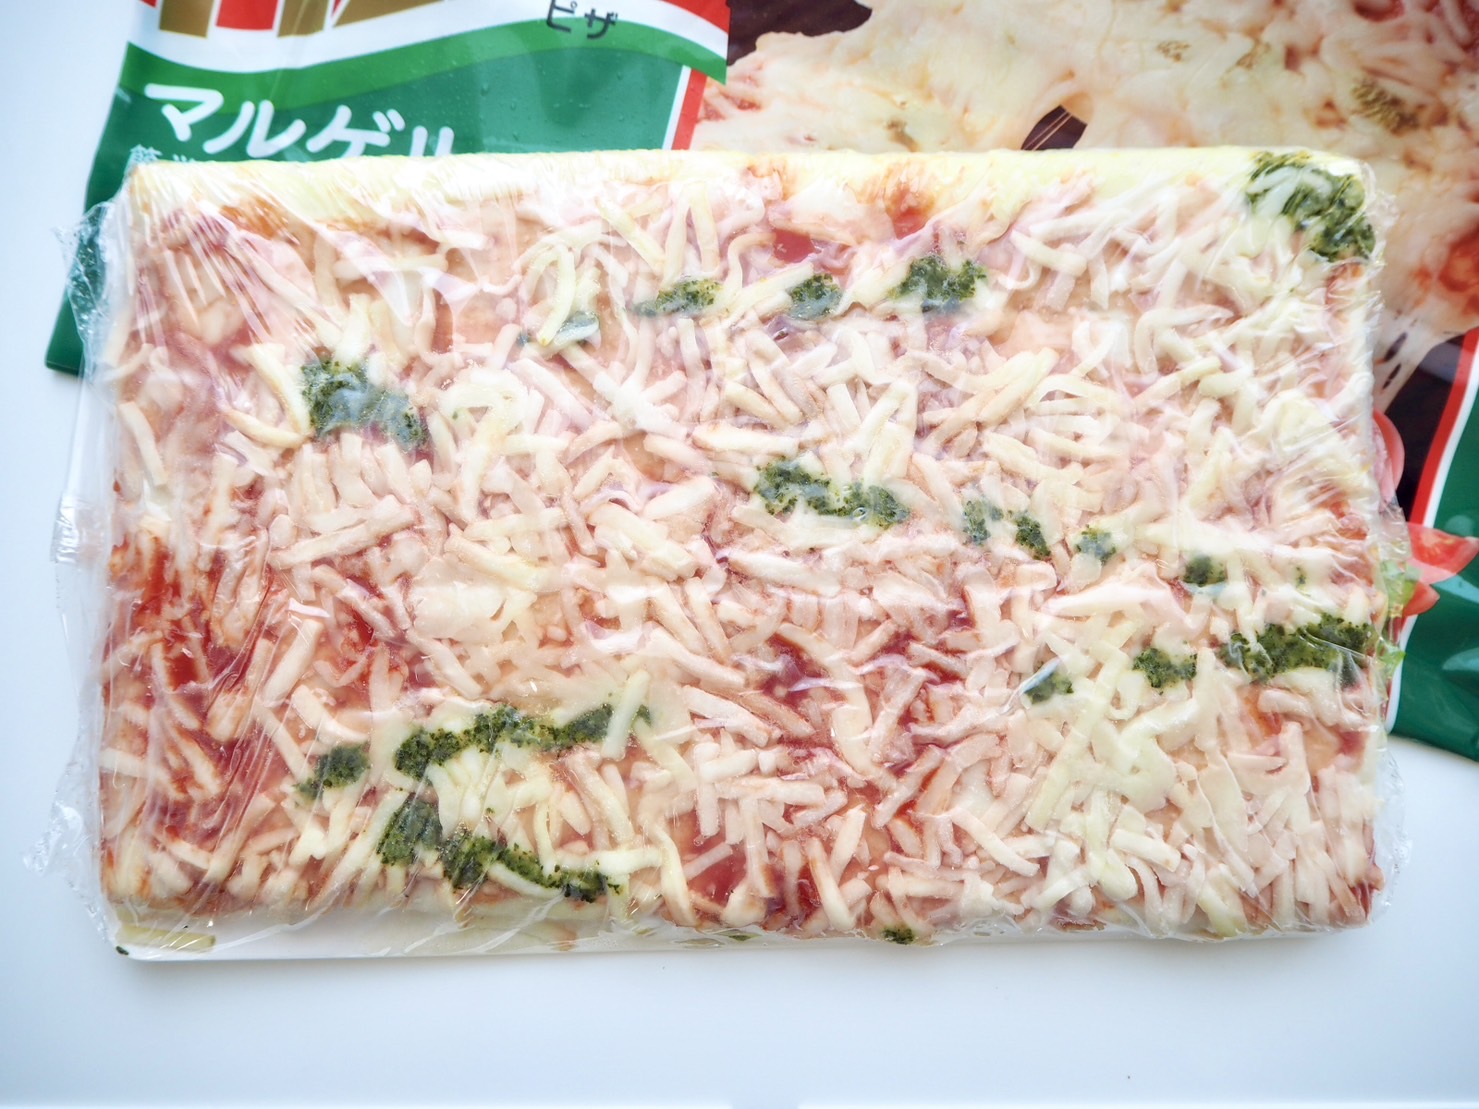 オーブンでそのまま焼けるピザ マルゲリータ
商品写真